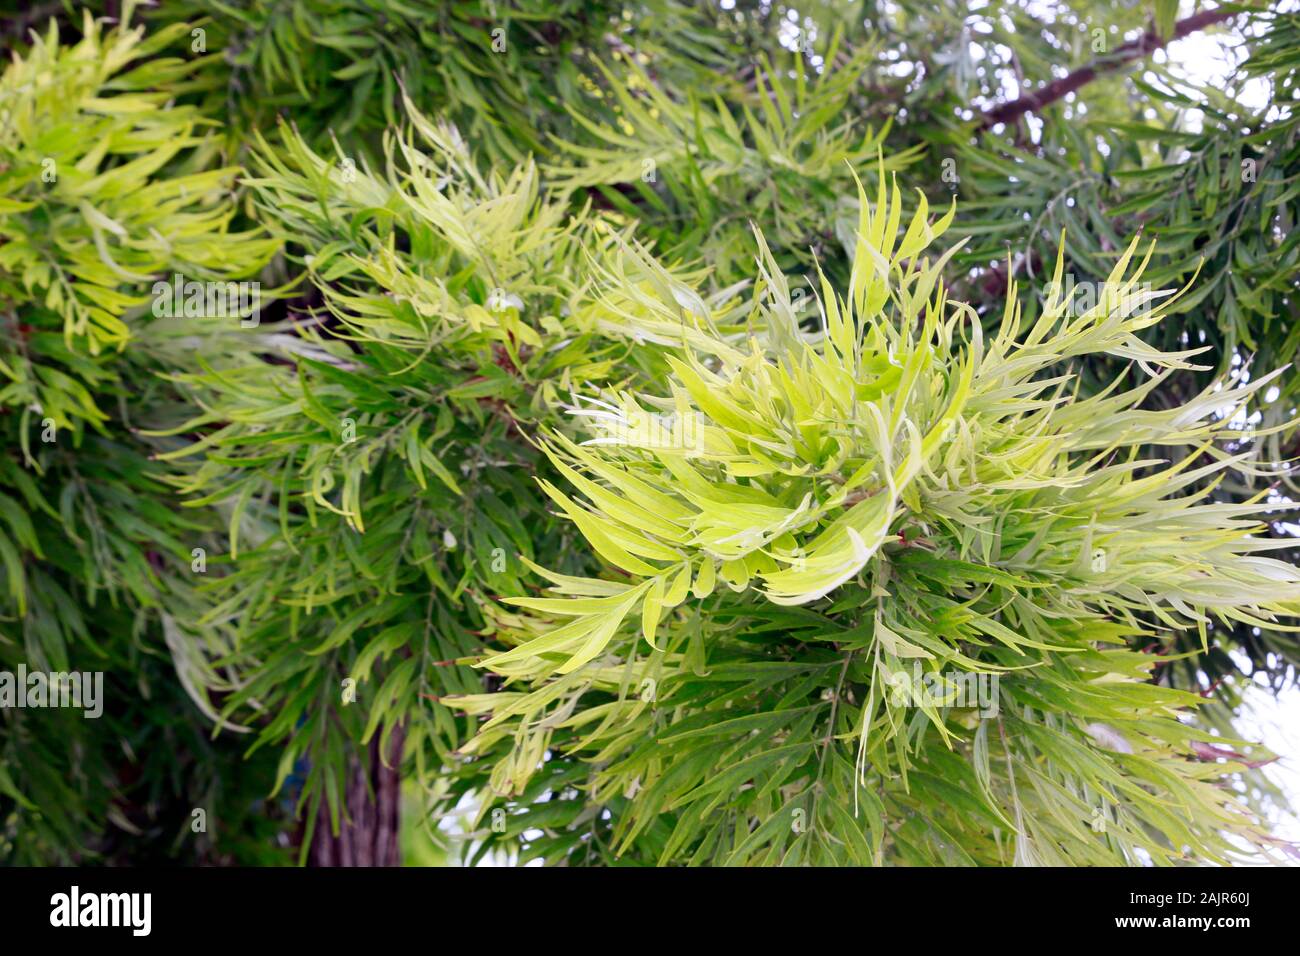 Laub einer australischen Silbereiche (Grevillea robusta), Kyrenia/Girne, Türkische Republik Nordzypern Foto Stock